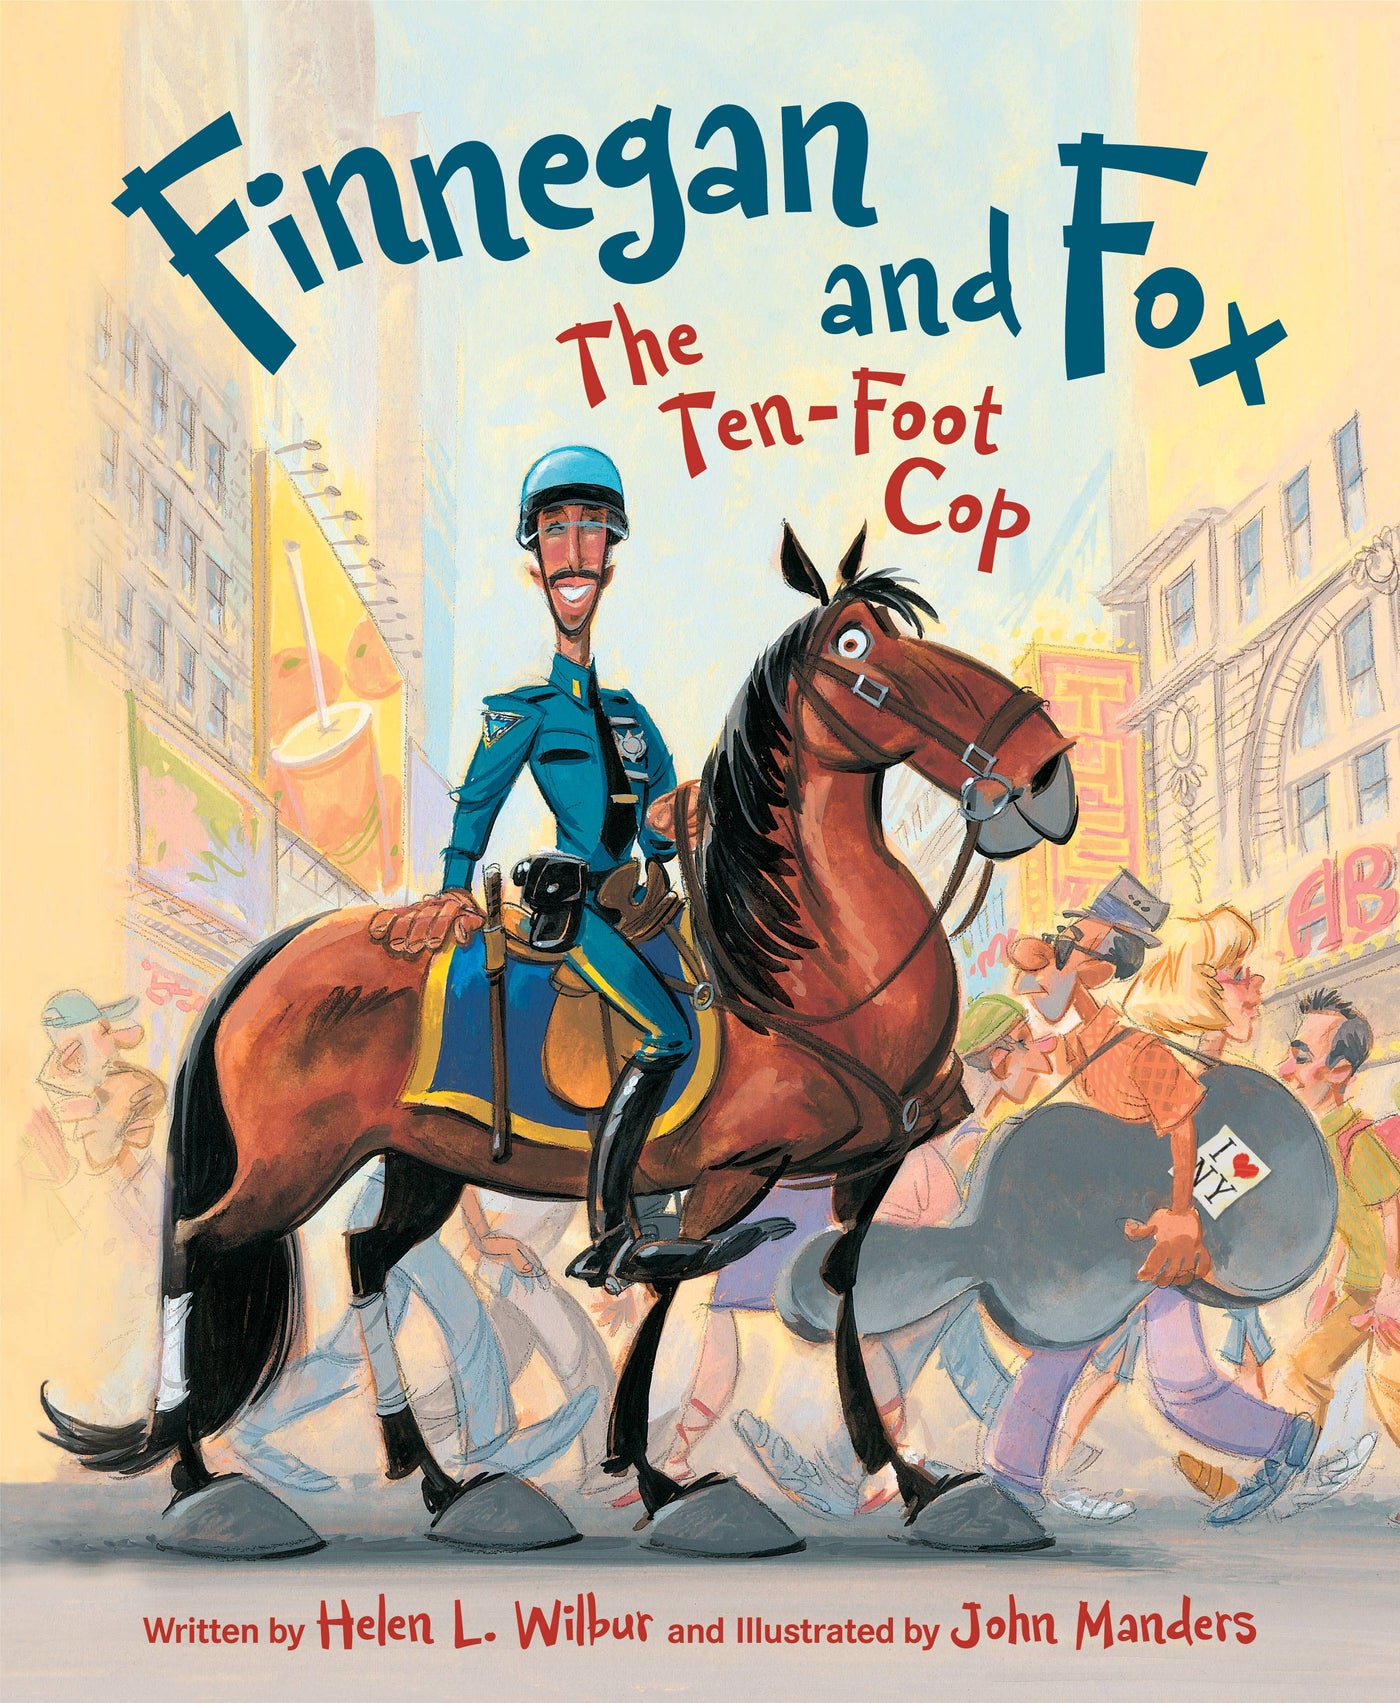 Sleeping Bear Press - Finnegan and Fox: The Ten-Foot Cop - Mumzie's Children